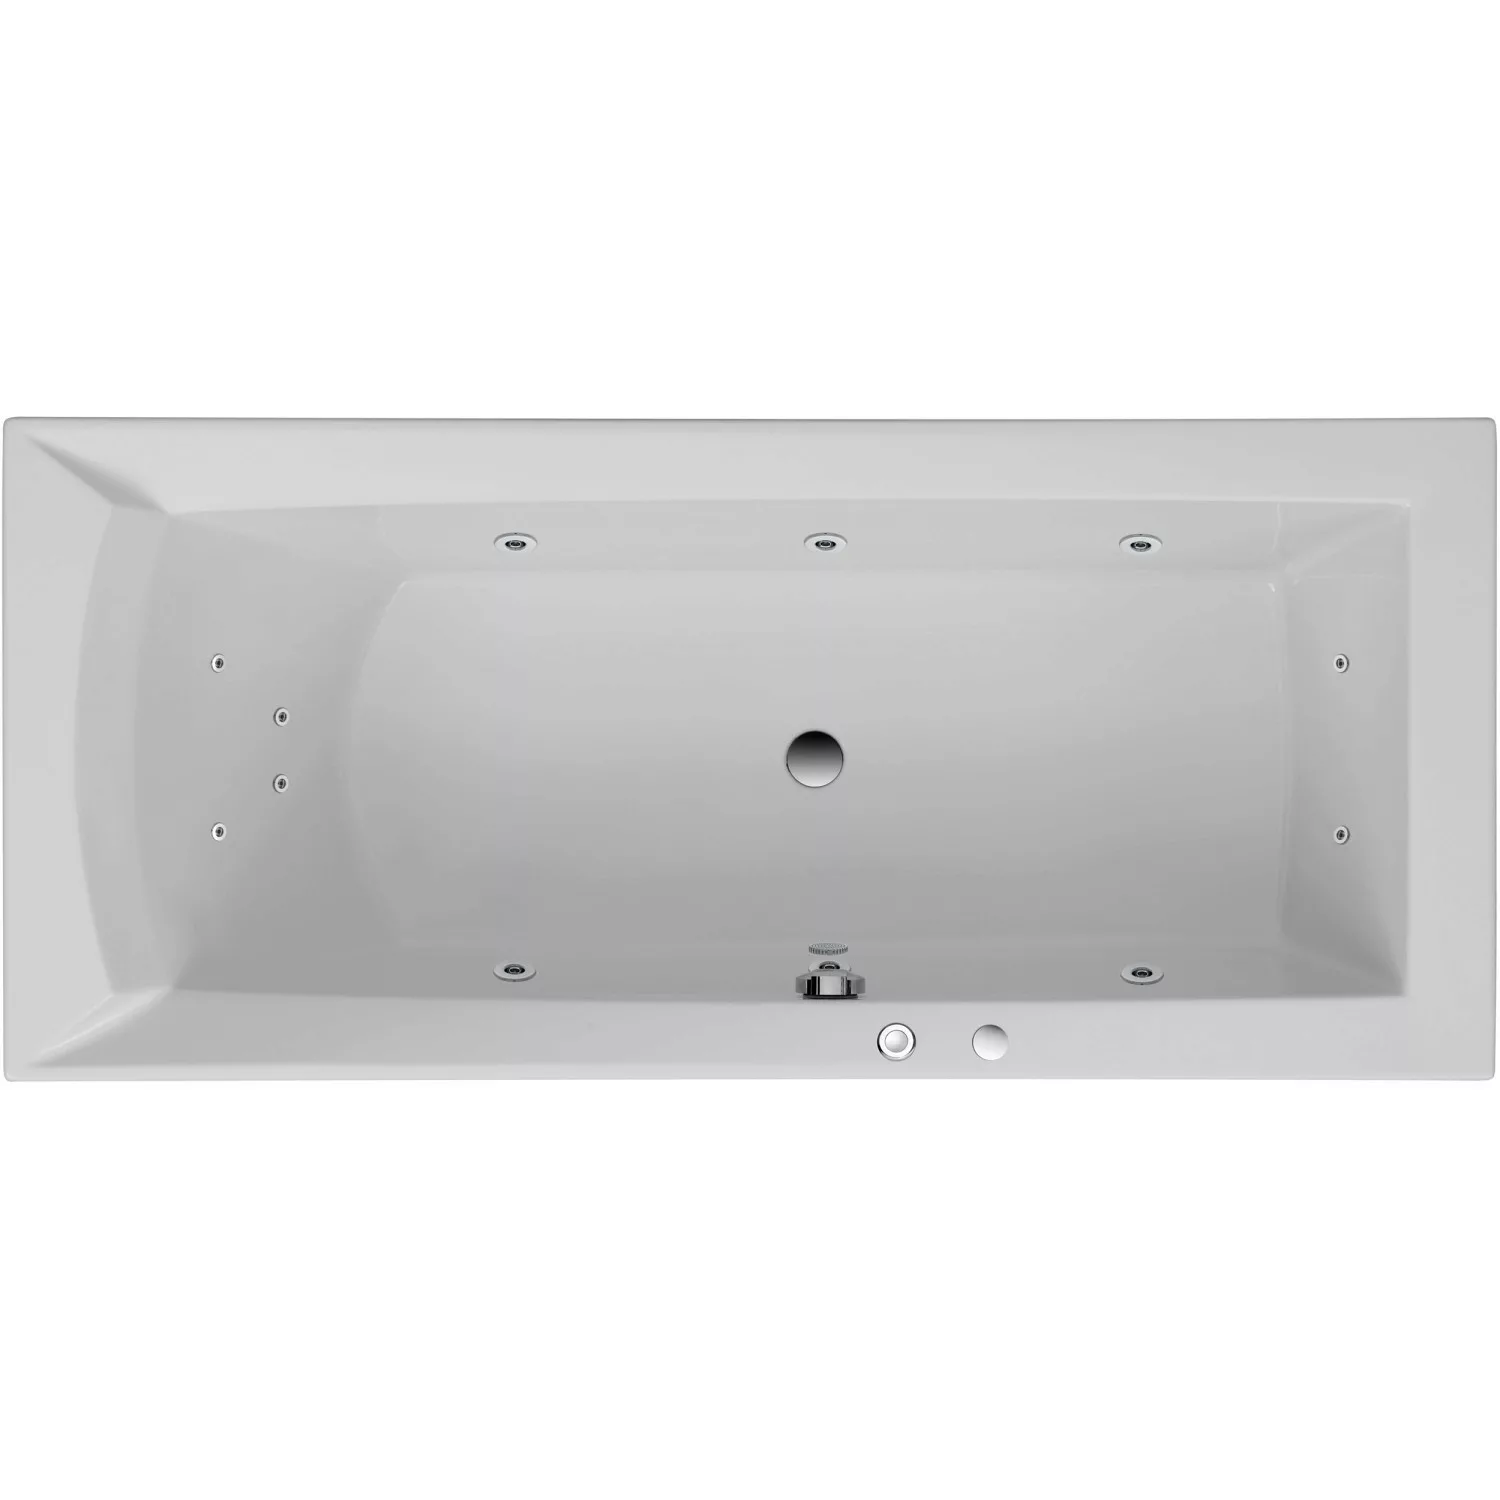 Ottofond Whirlpool Porta Komfort 170 cm x 75 cm Weiß günstig online kaufen